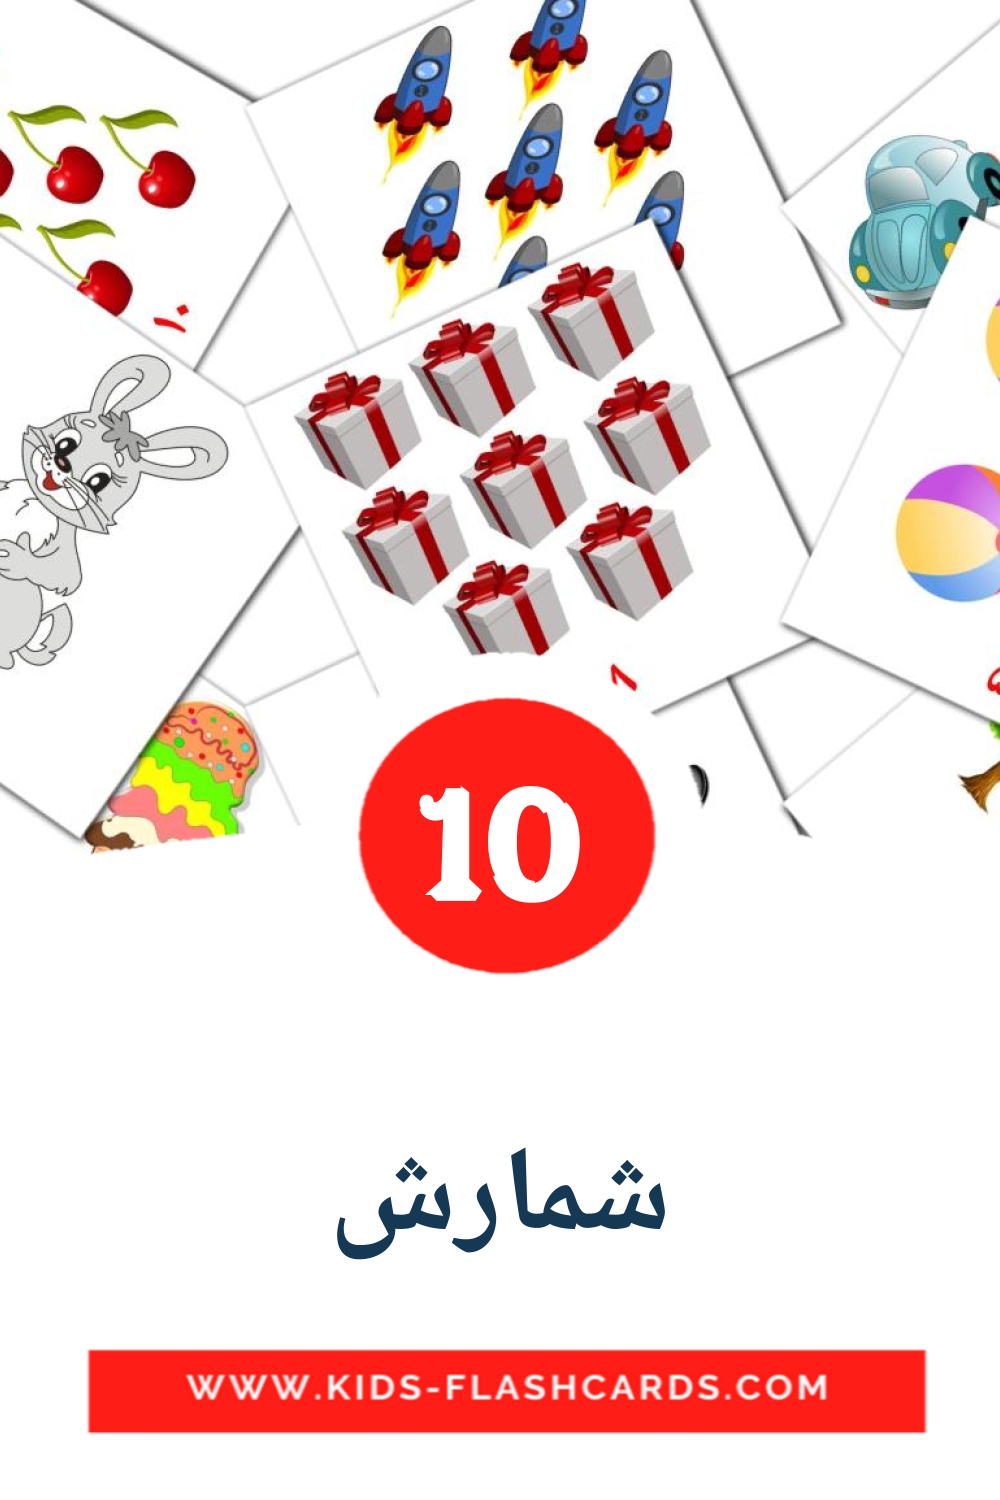 10 carte illustrate di شمارش per la scuola materna in persiano